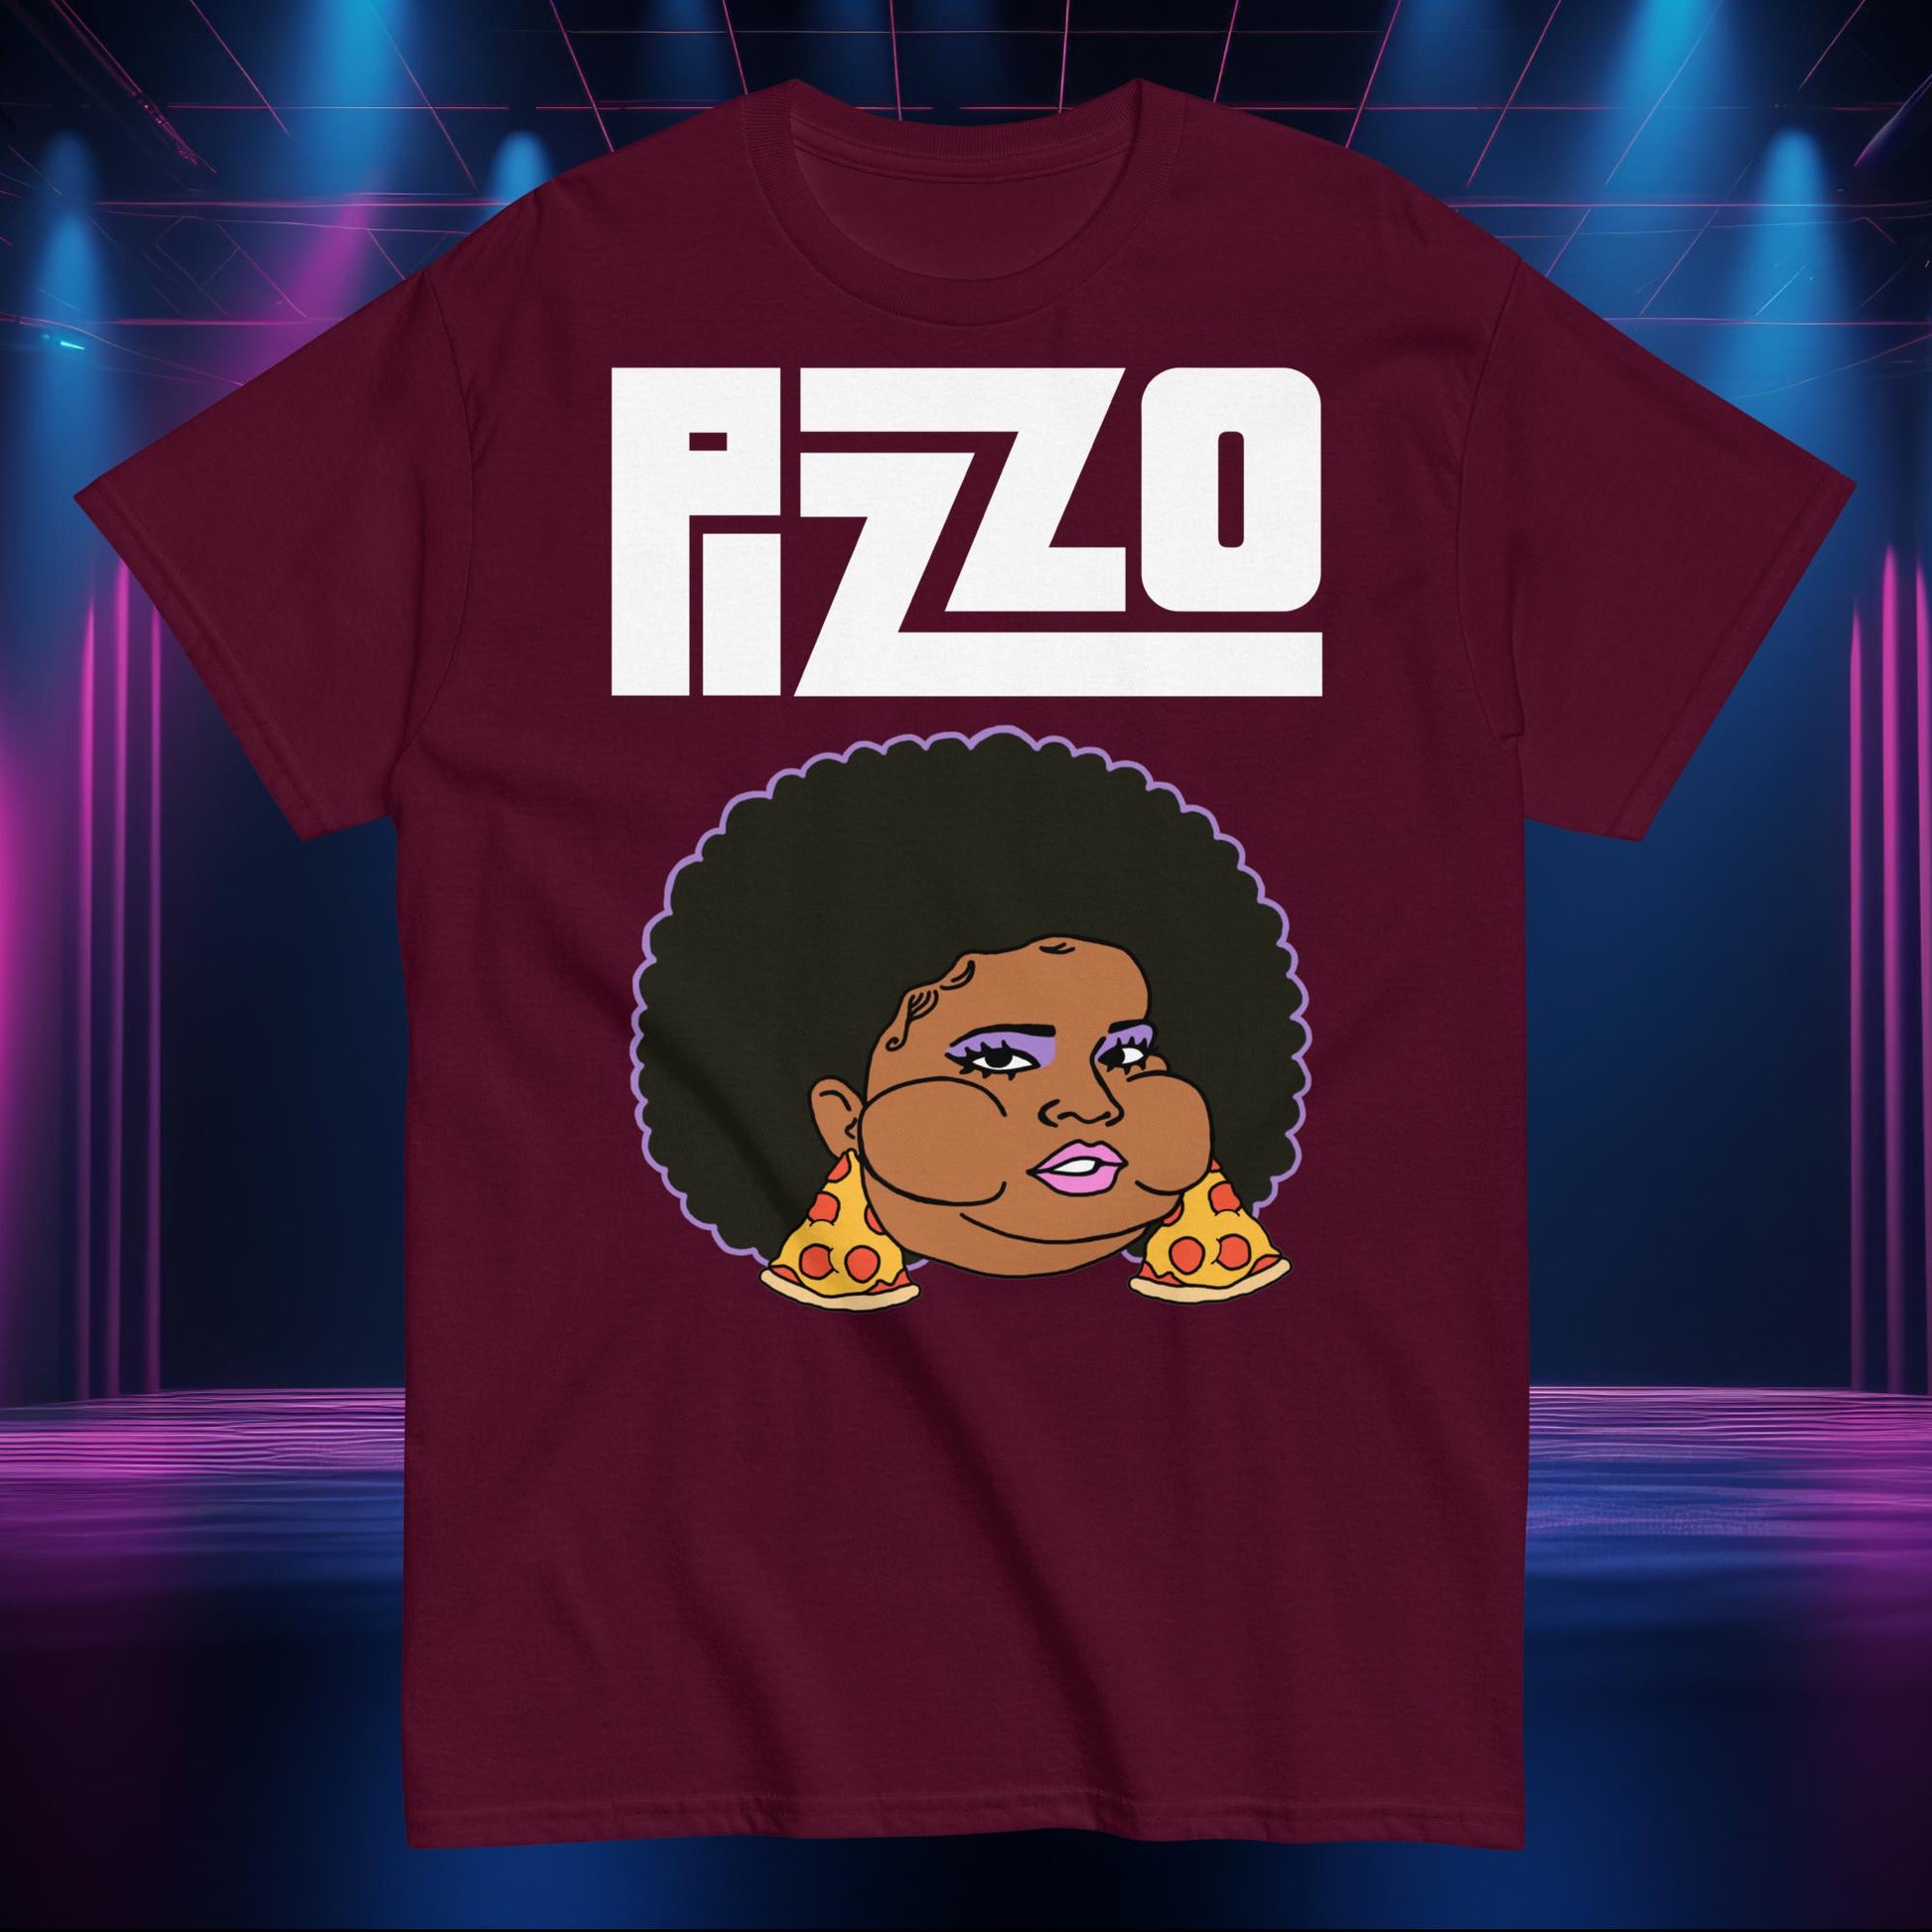 Pizzo Lizzo Pizza Lizzo Merch Lizzo Gift Body Positivity Body empowerment Lizzo T-shirt Next Cult Brand